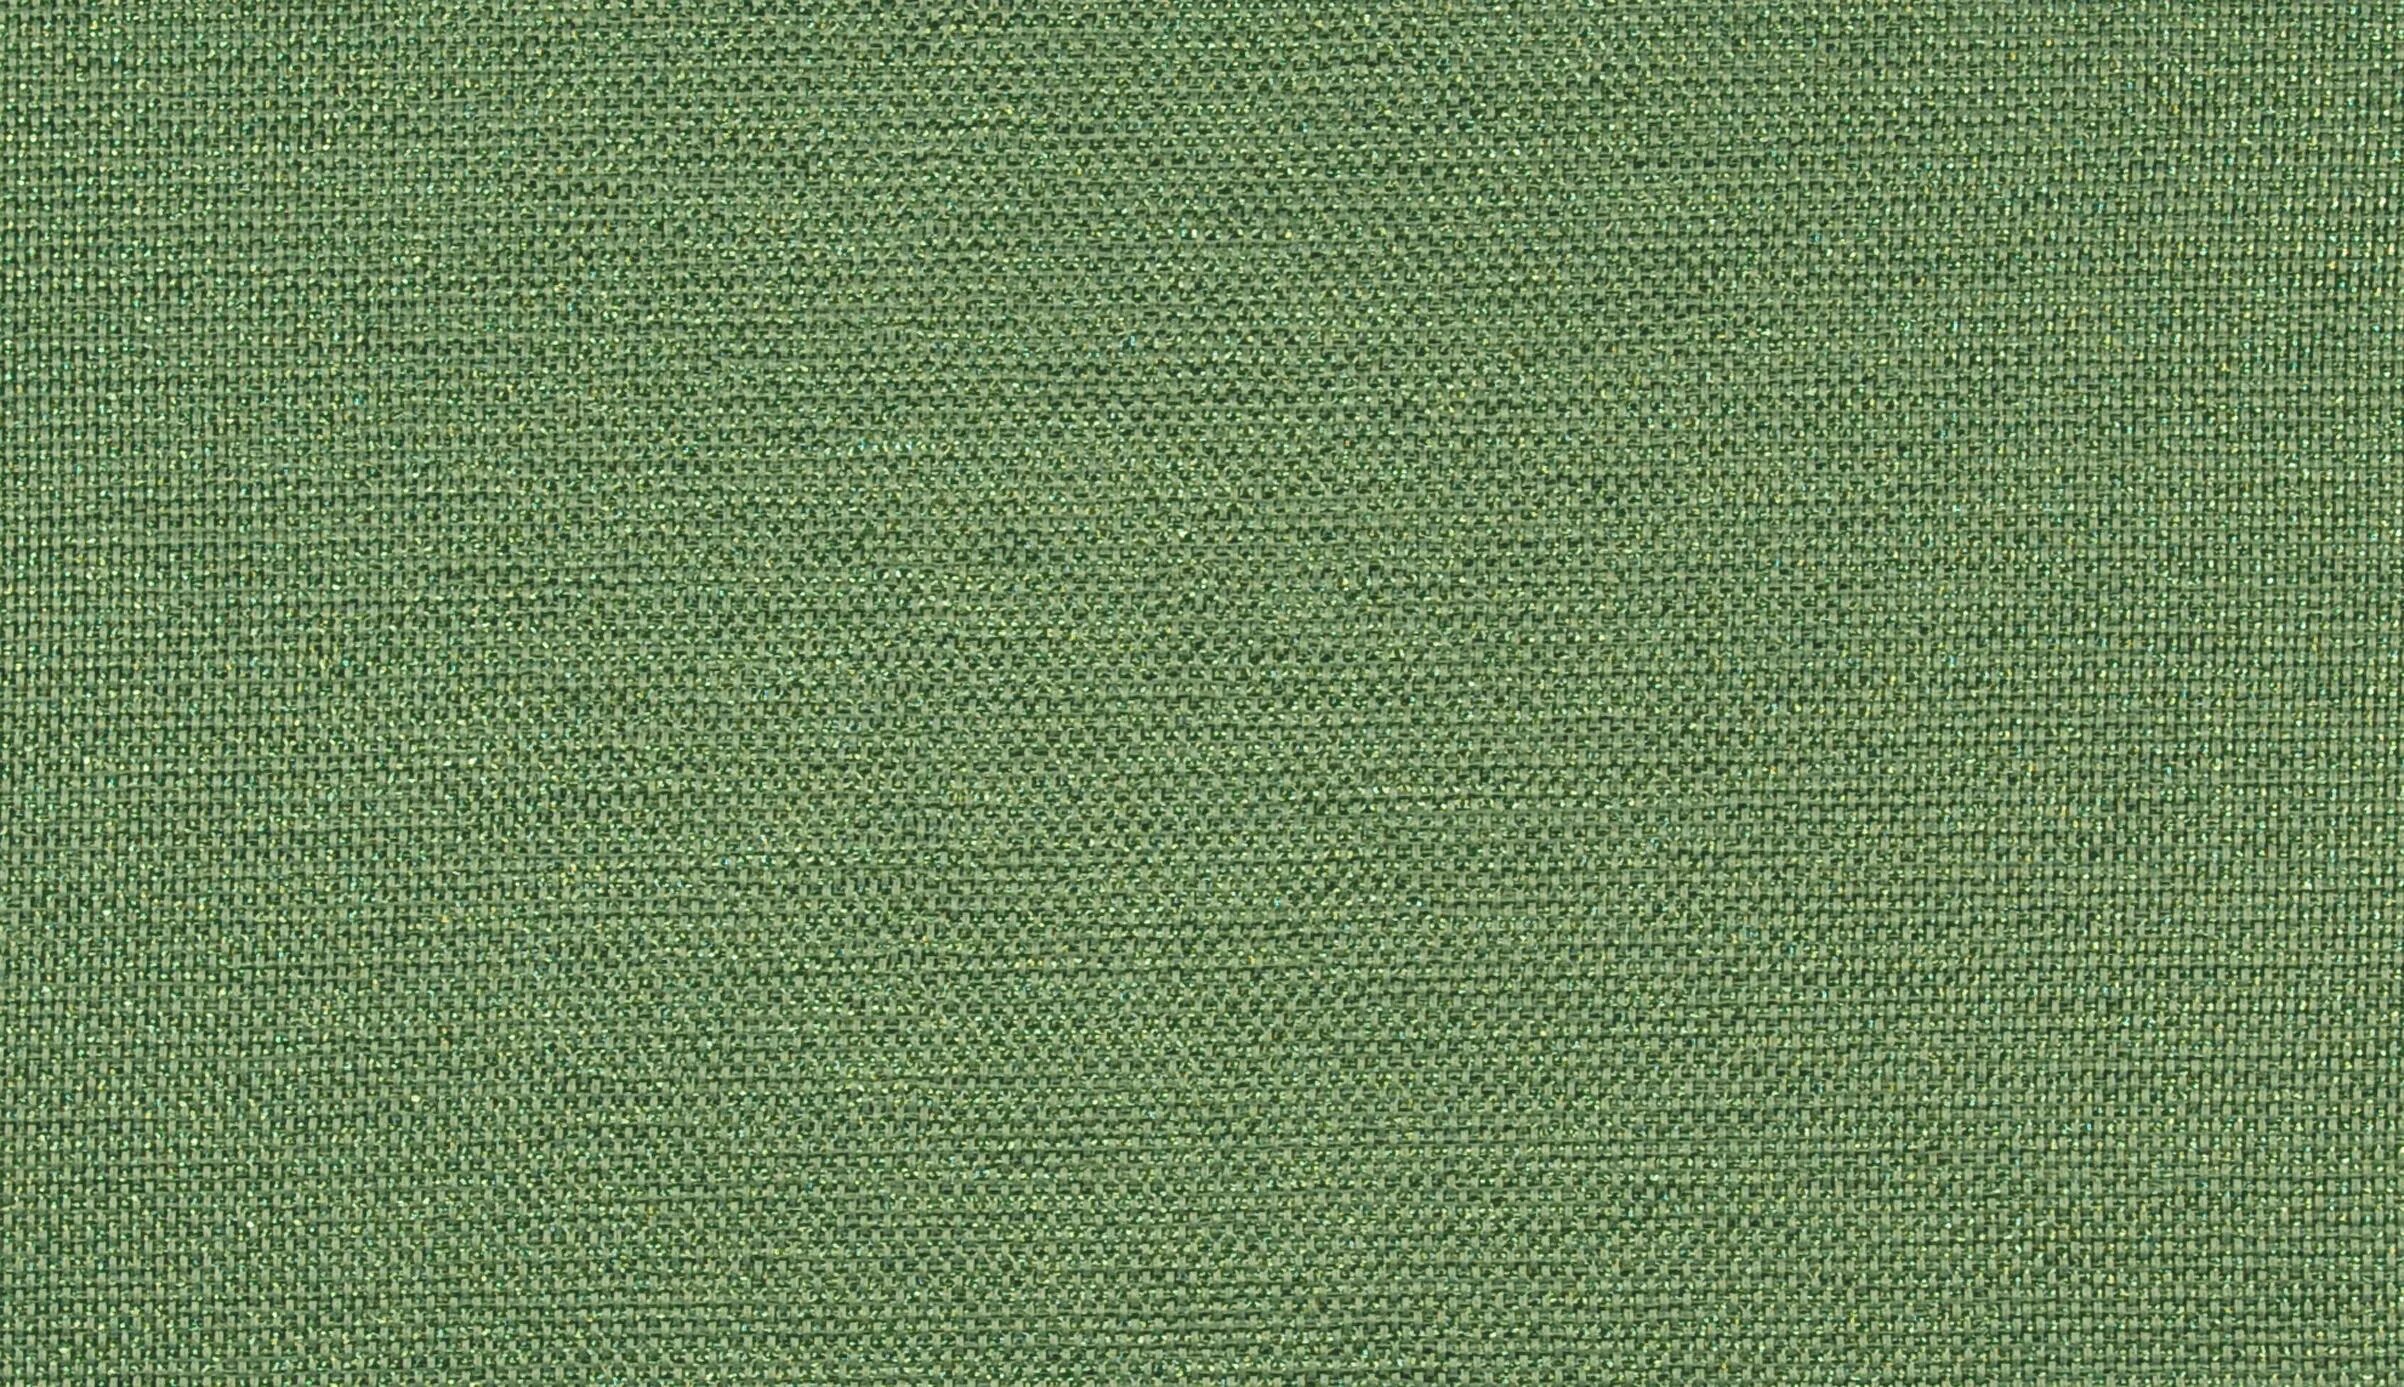 Хаки описание. Ткань хаки армейский (RAL-7008). Цвет хаки зеленый болотный. Защитный цвет. Зеленая ткань.